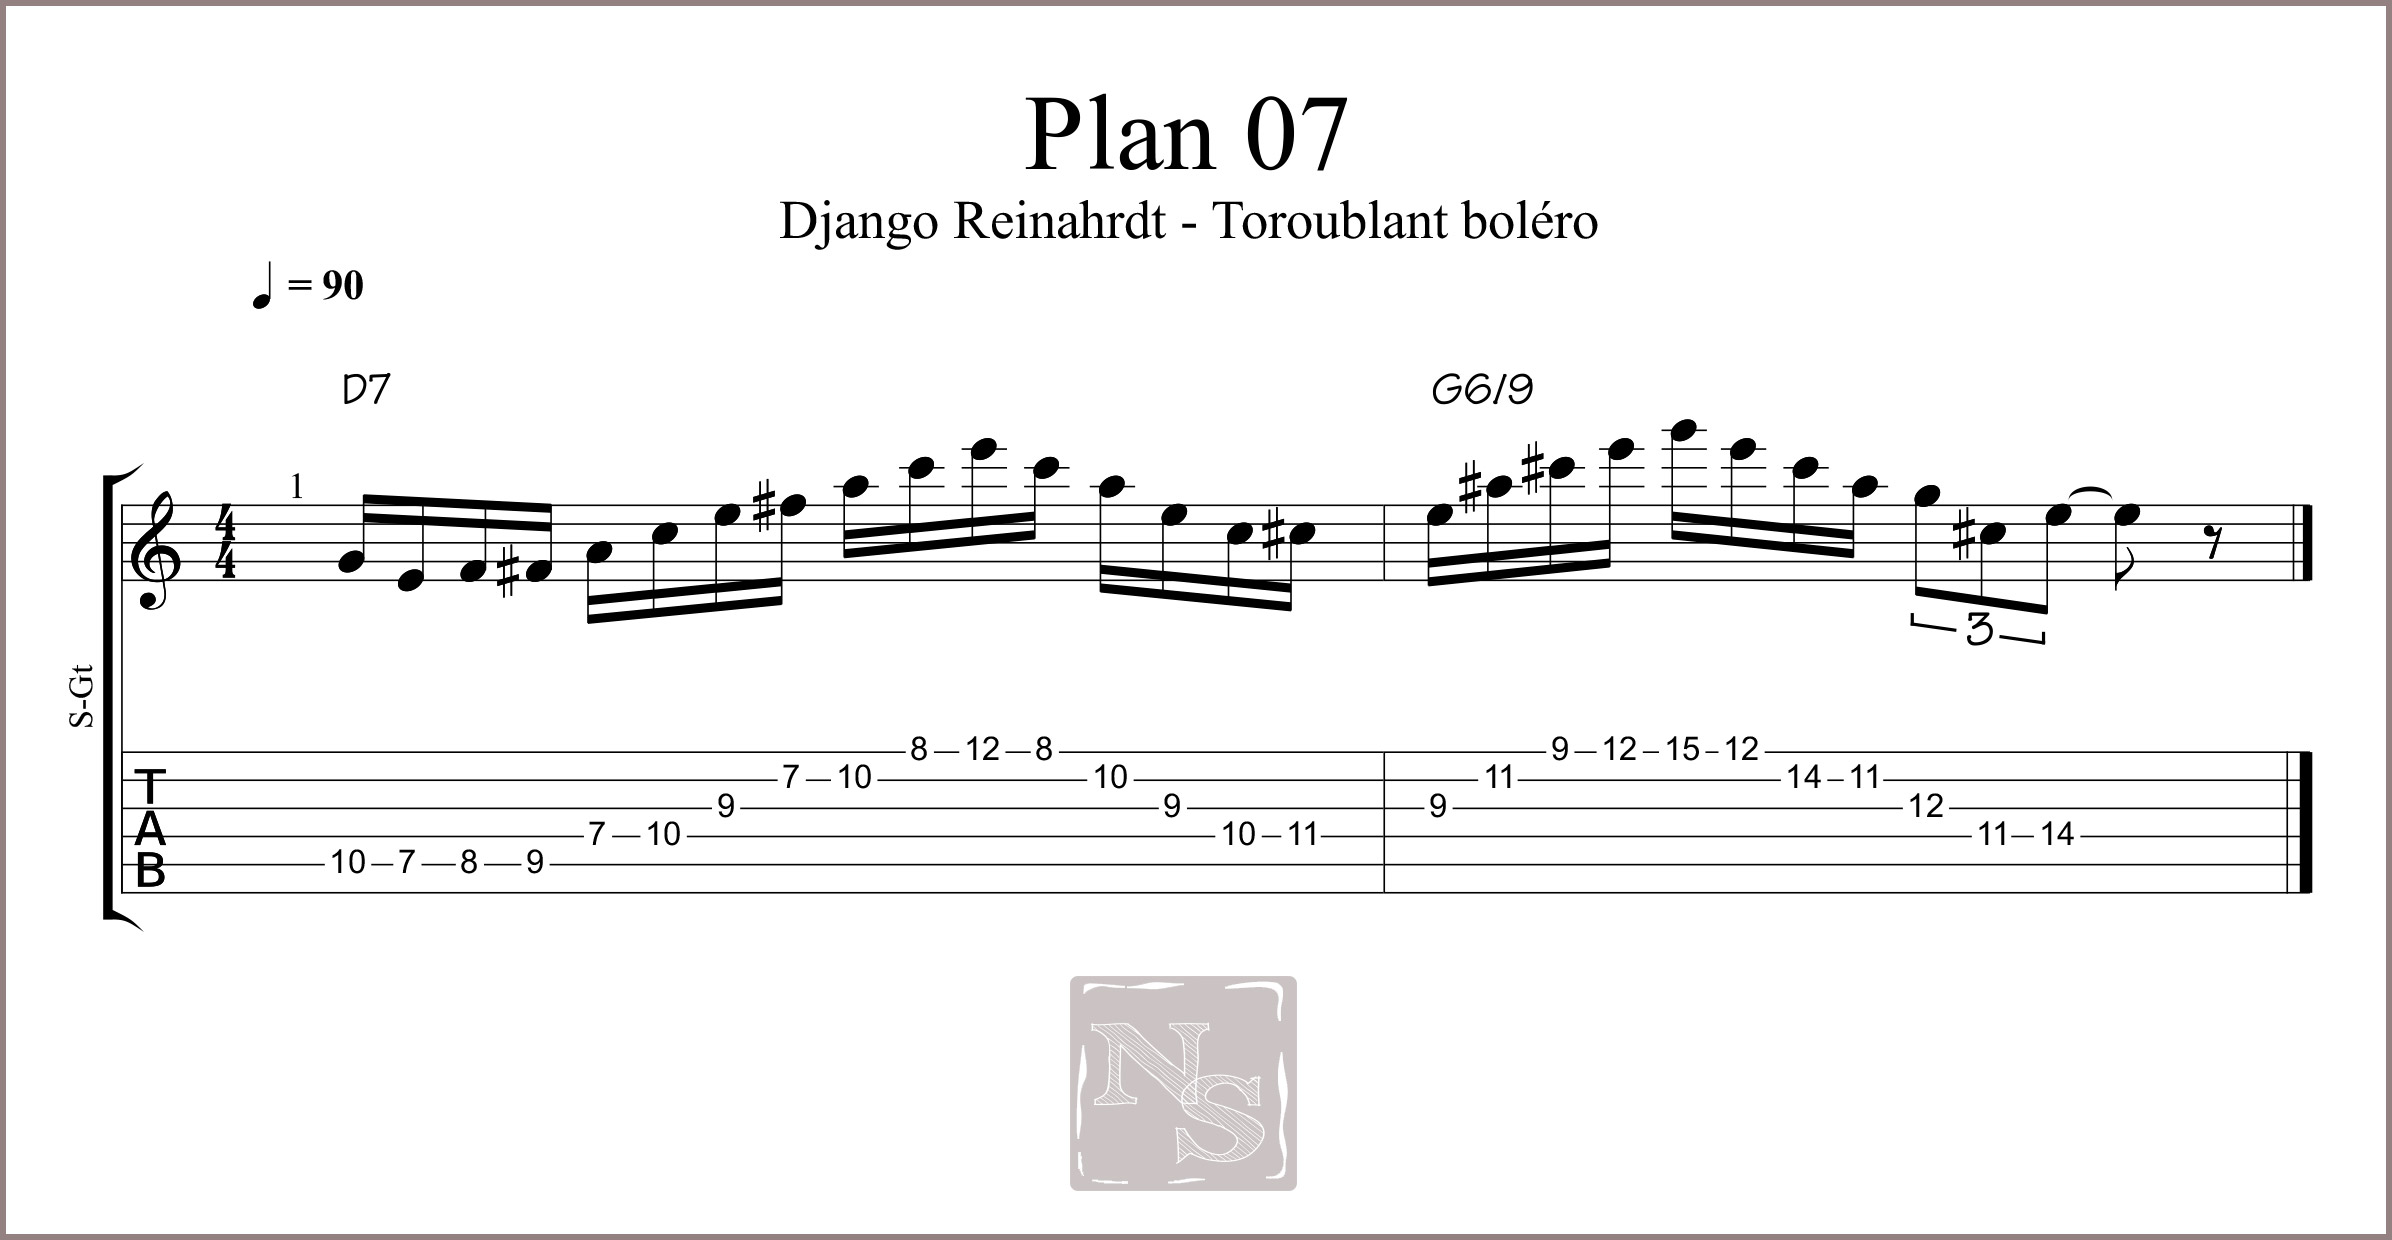 Plan 07 